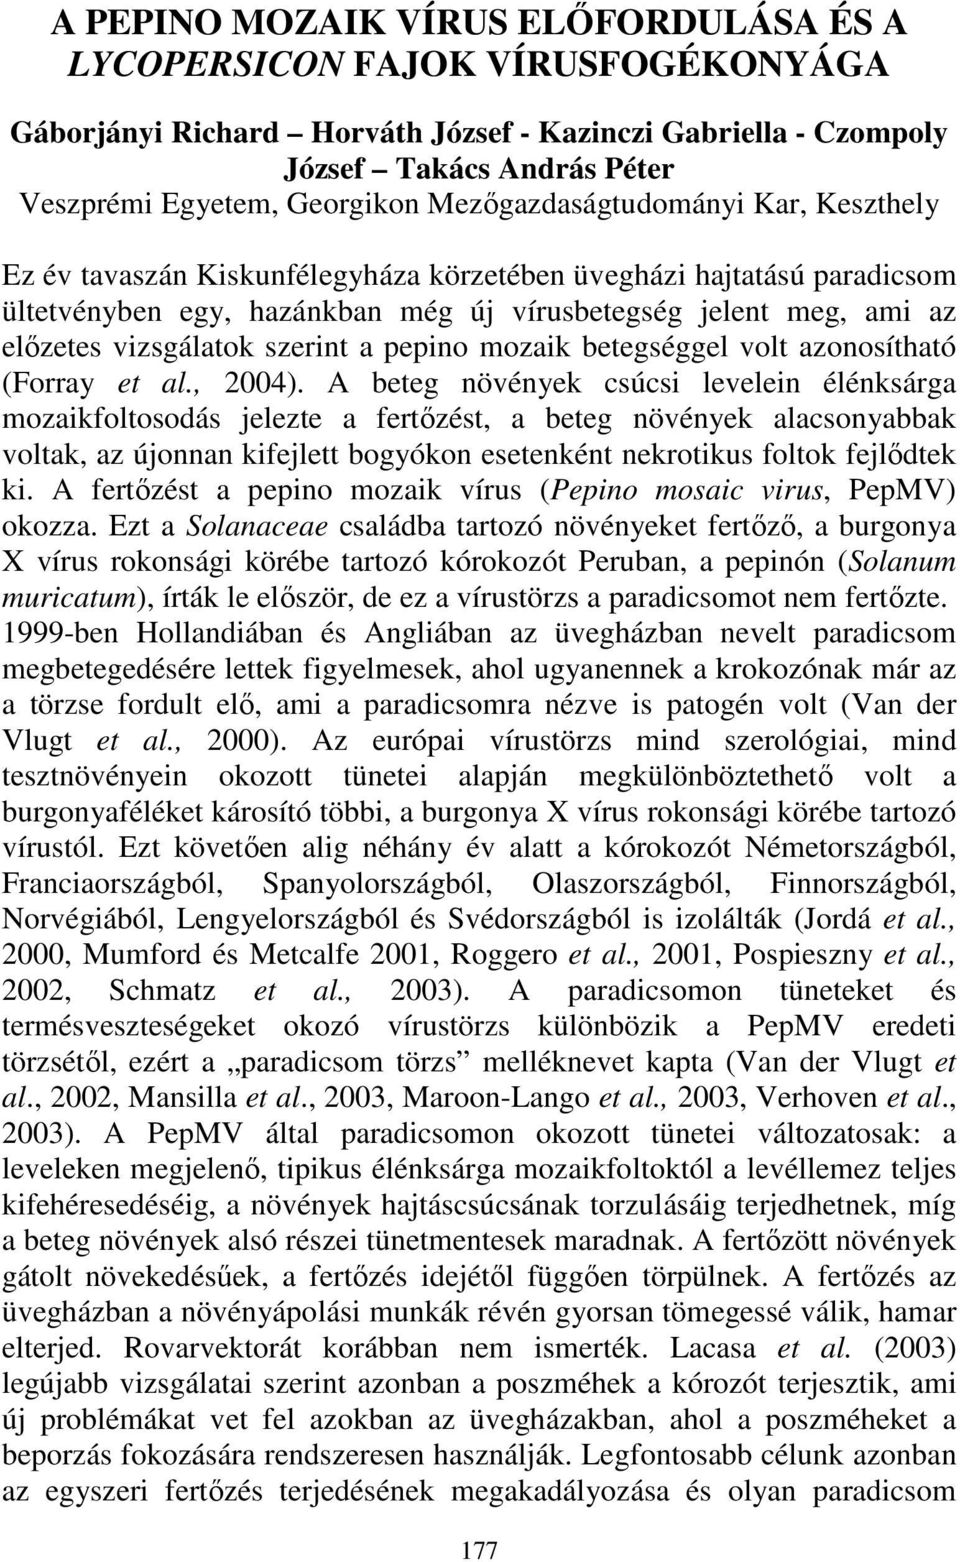 szerint a pepino mozaik betegséggel volt azonosítható (Forray et al., 2004).